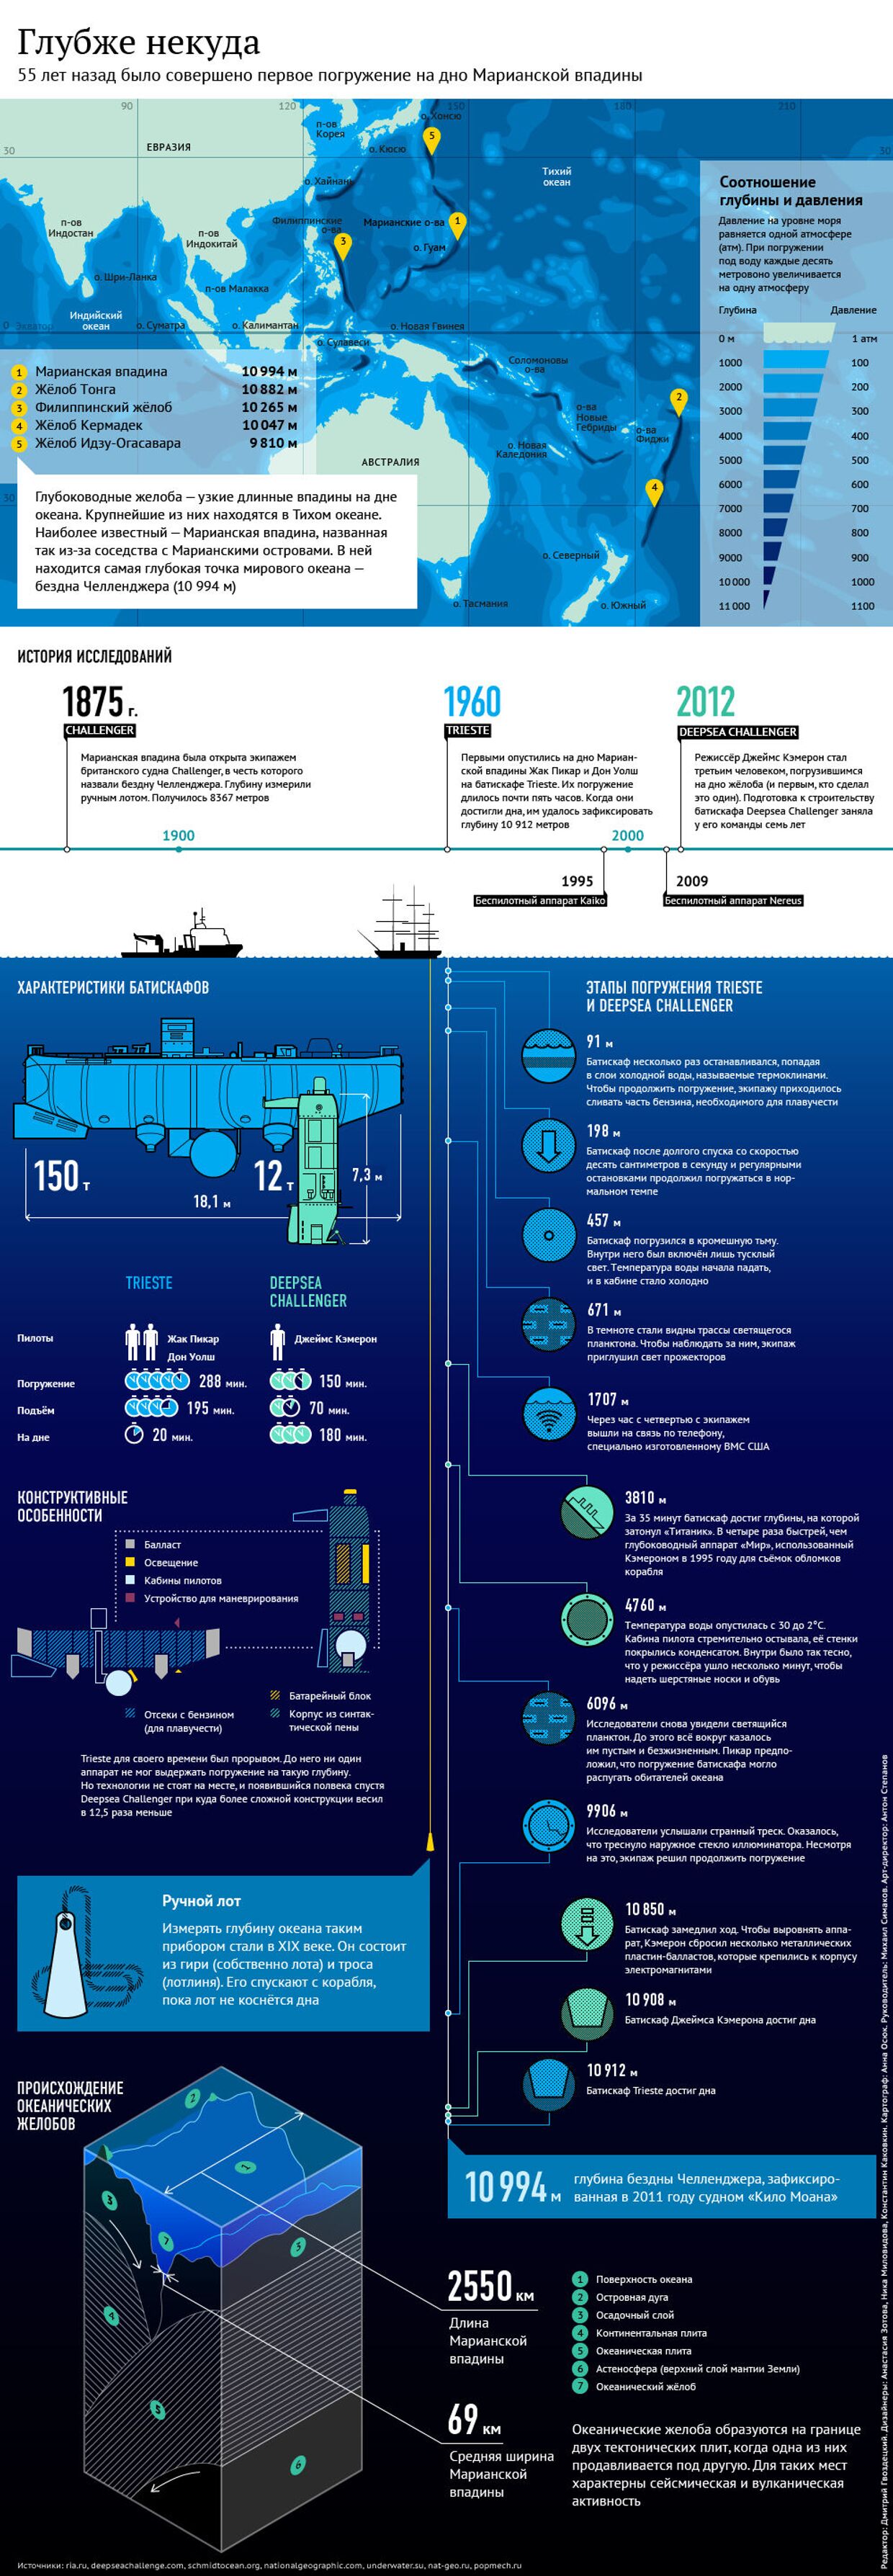 В пучине океана: особенности глубоководных исследований